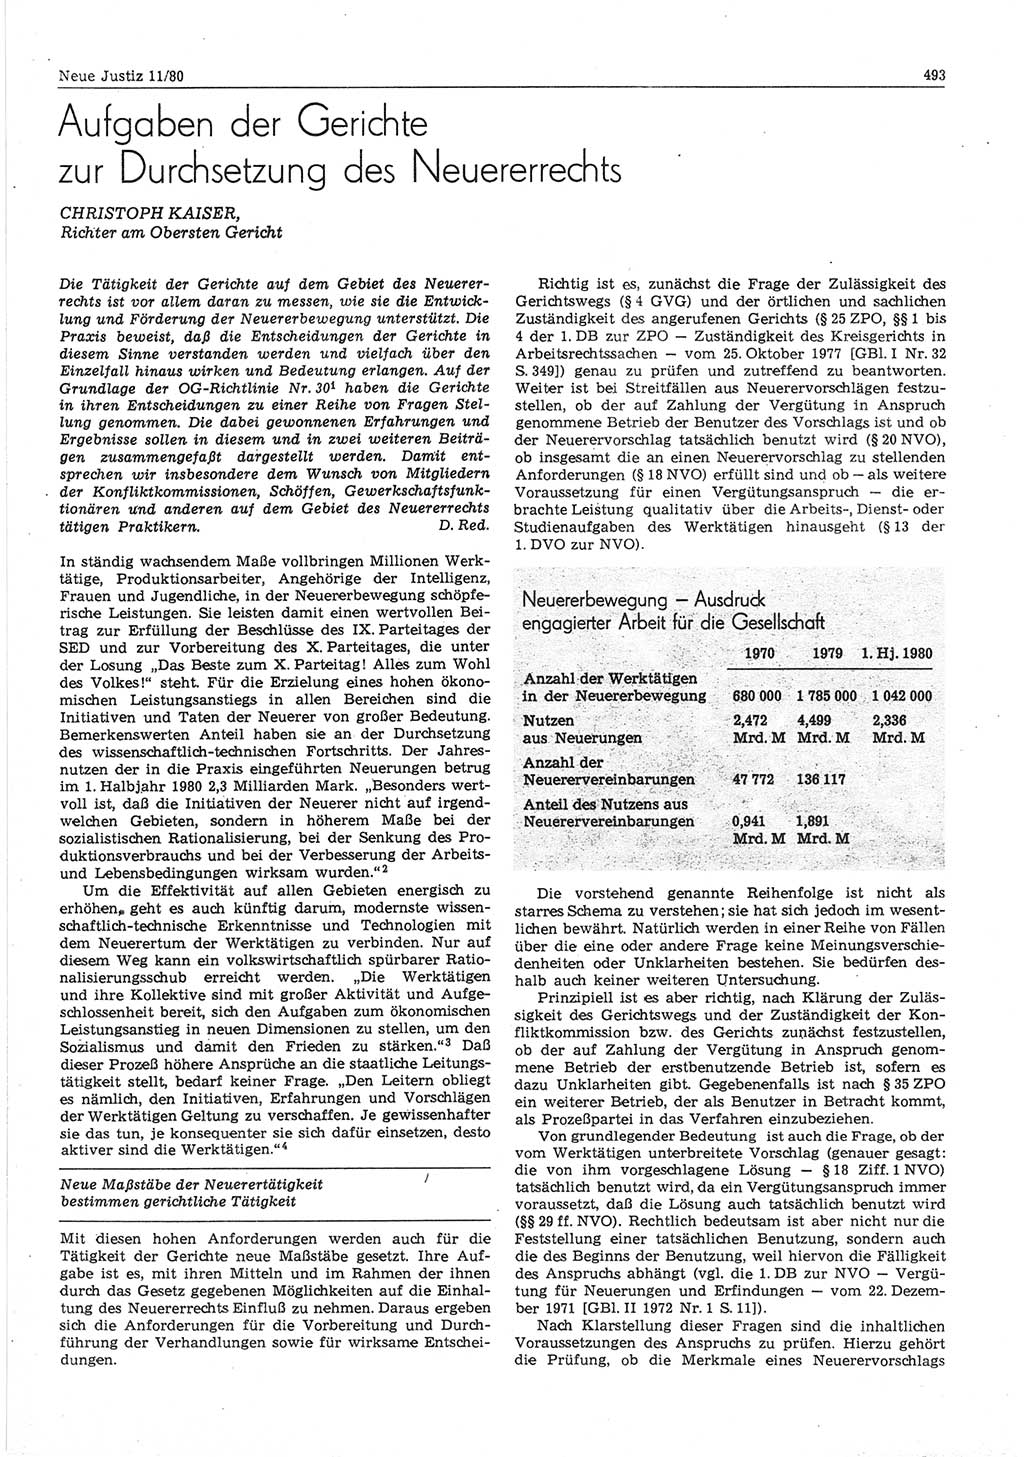 Neue Justiz (NJ), Zeitschrift für sozialistisches Recht und Gesetzlichkeit [Deutsche Demokratische Republik (DDR)], 34. Jahrgang 1980, Seite 493 (NJ DDR 1980, S. 493)